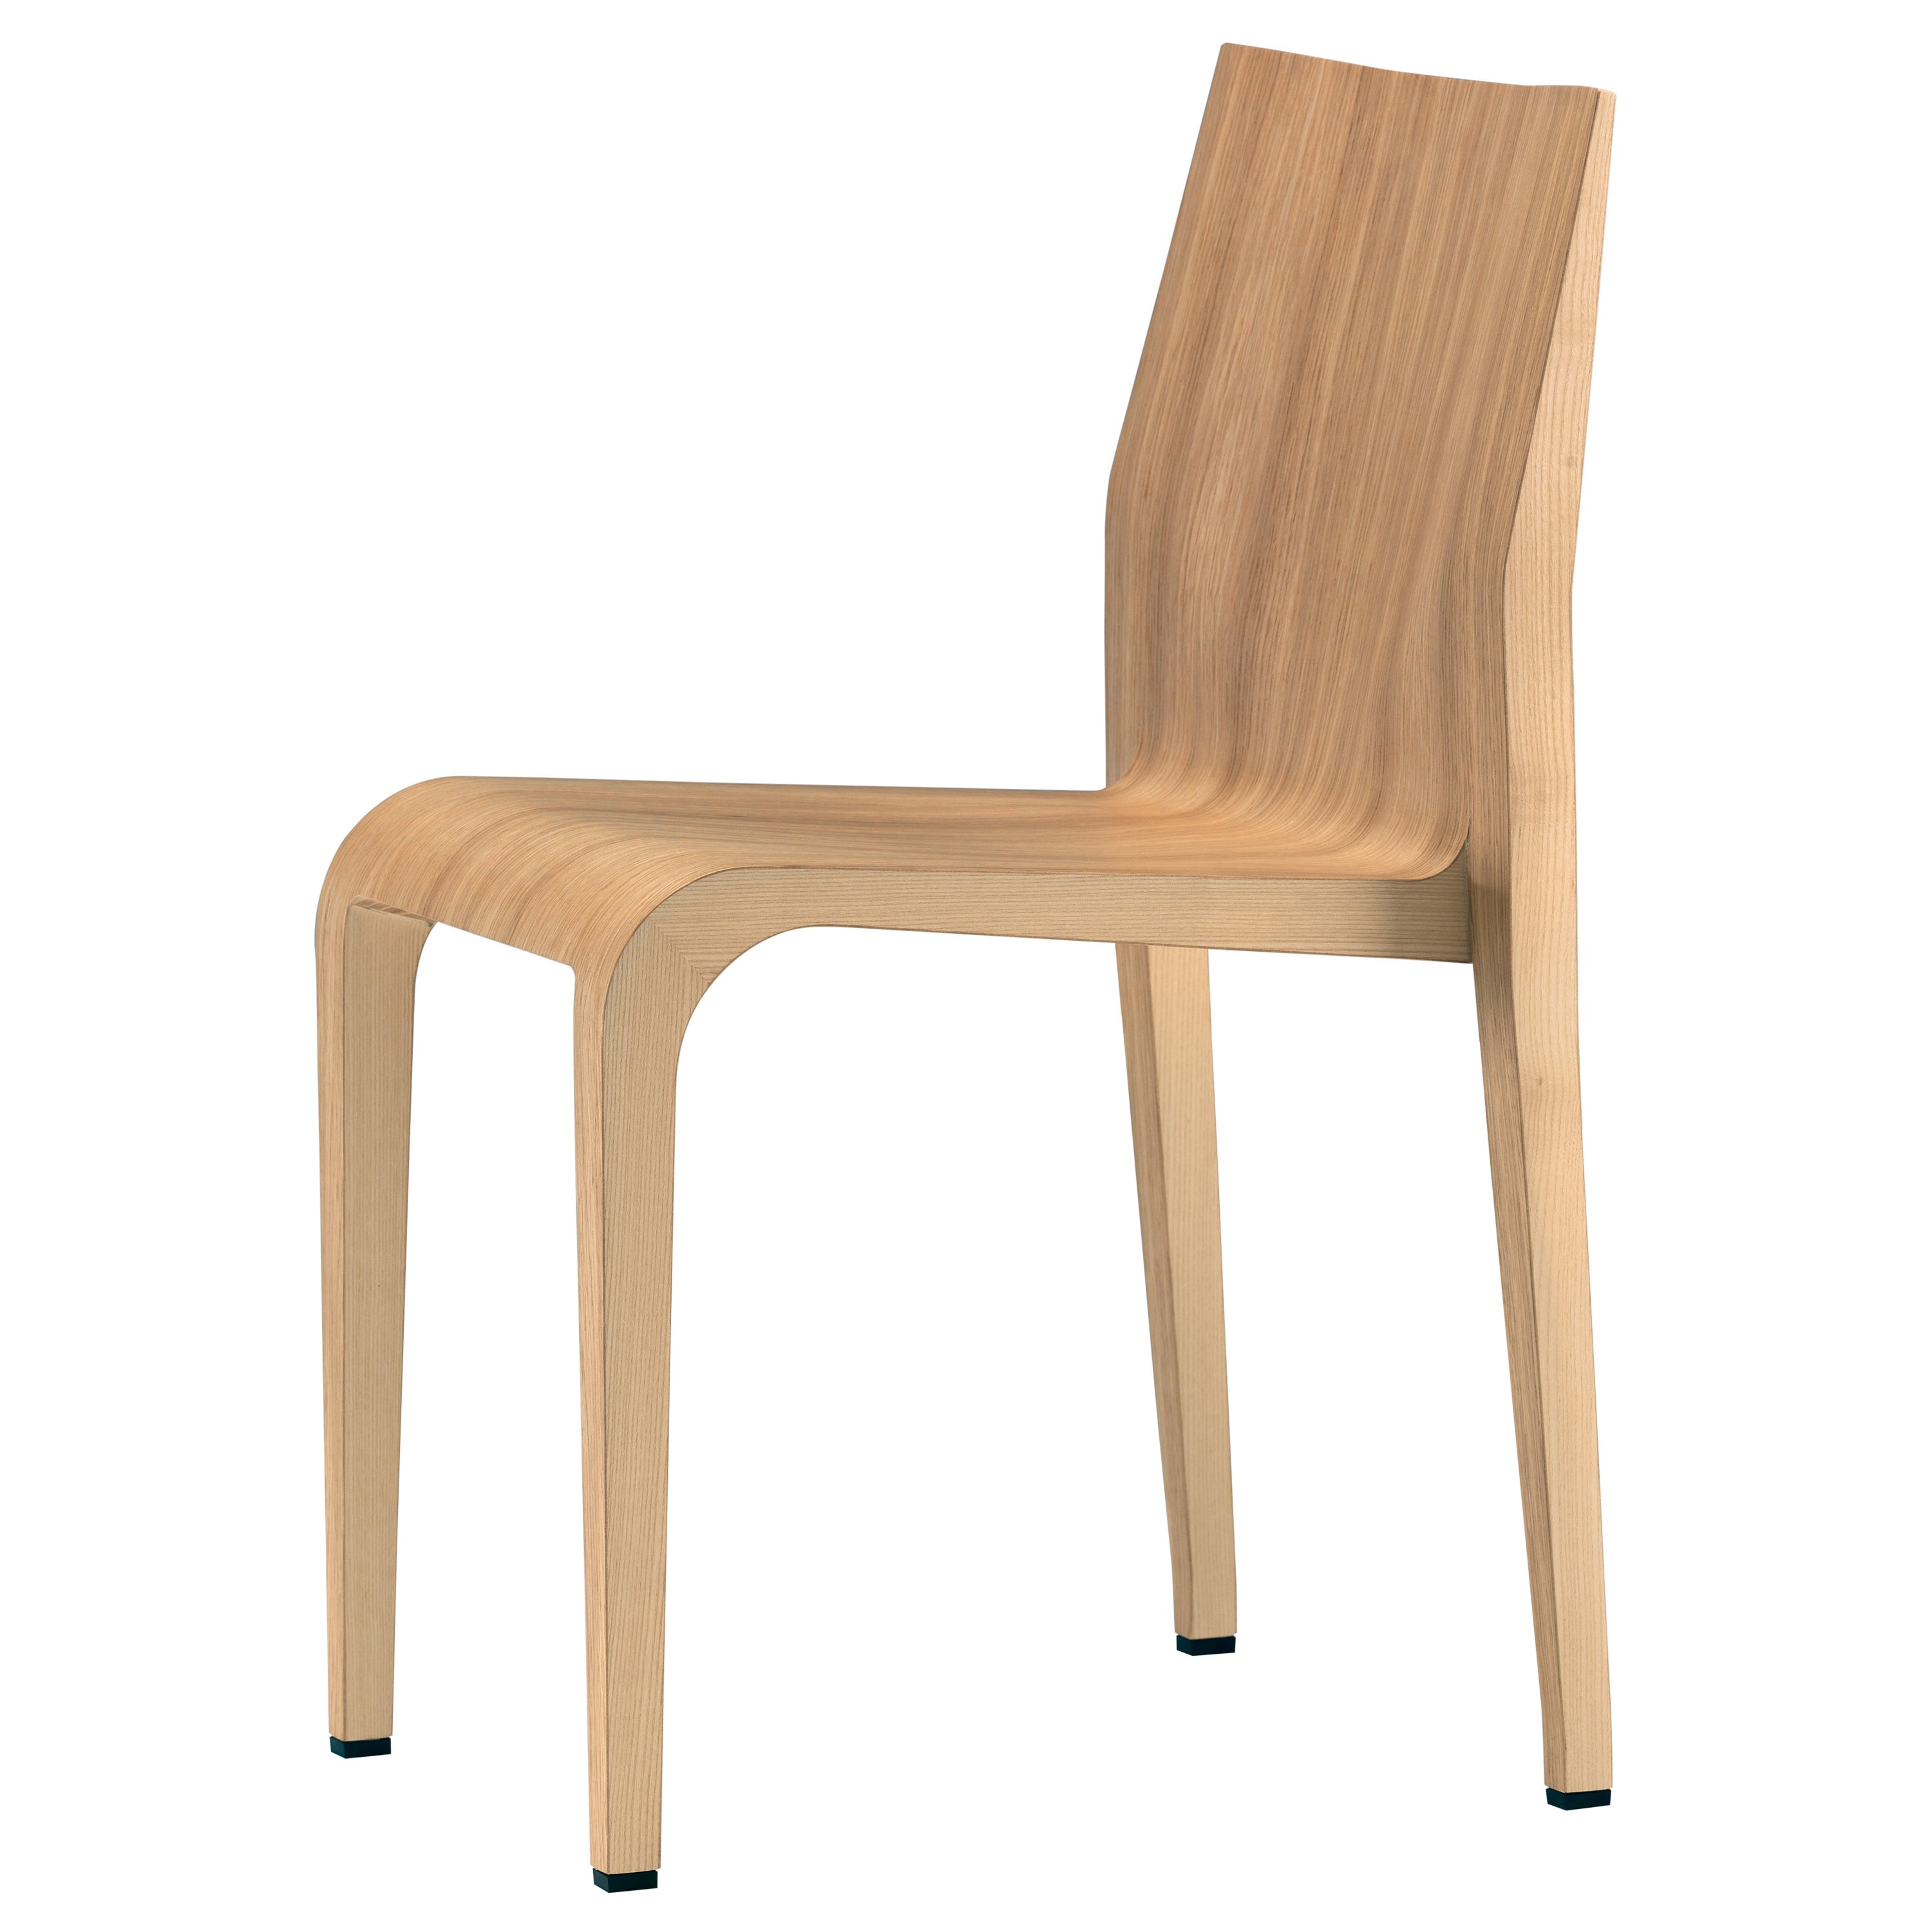 Alias 301 Laleggera Chair in Natural Oak Wood by Riccardo Blumer For Sale